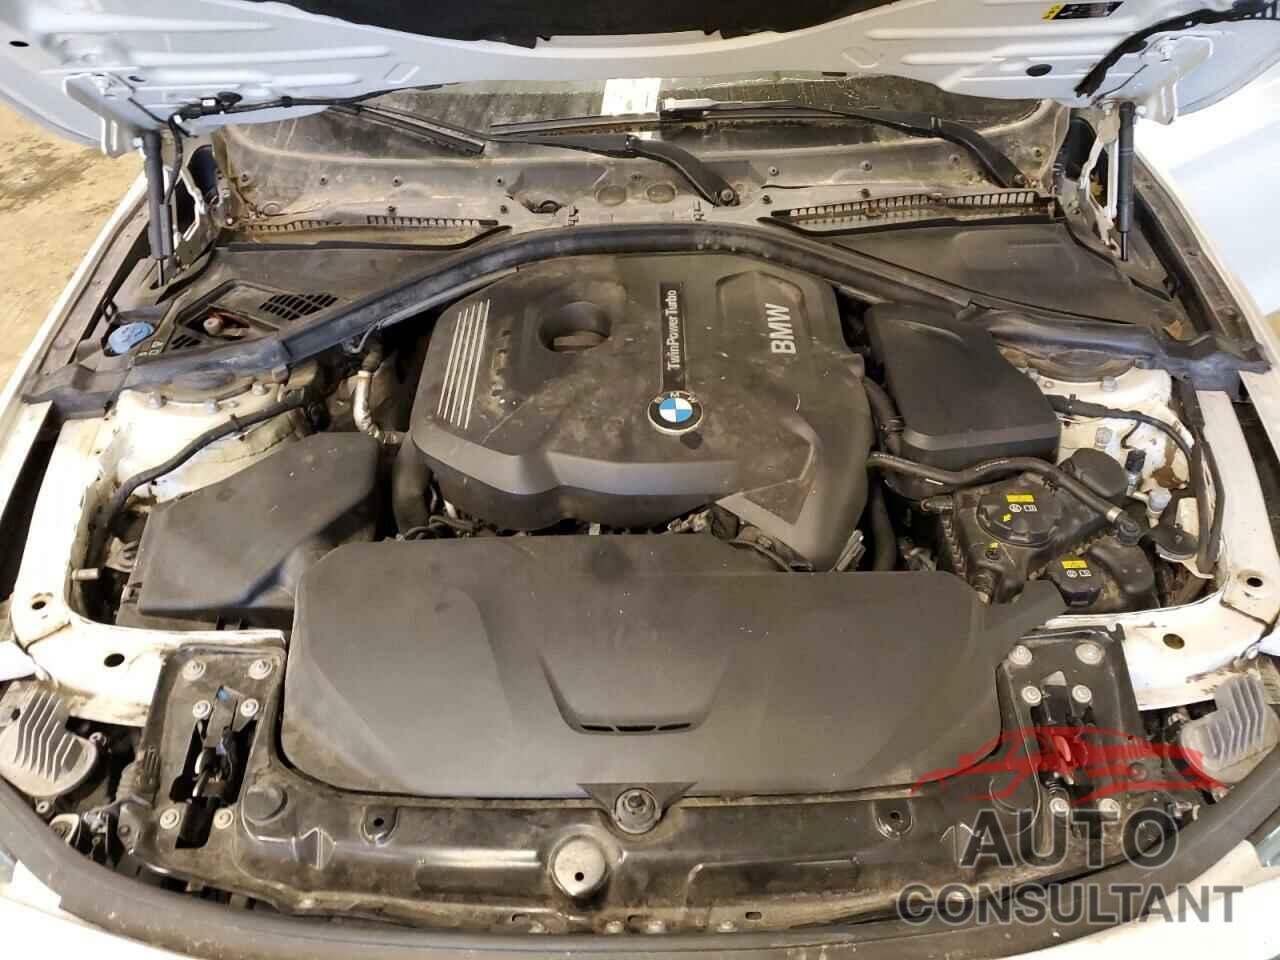 BMW 4 SERIES 2019 - WBA4J1C59KBM16077